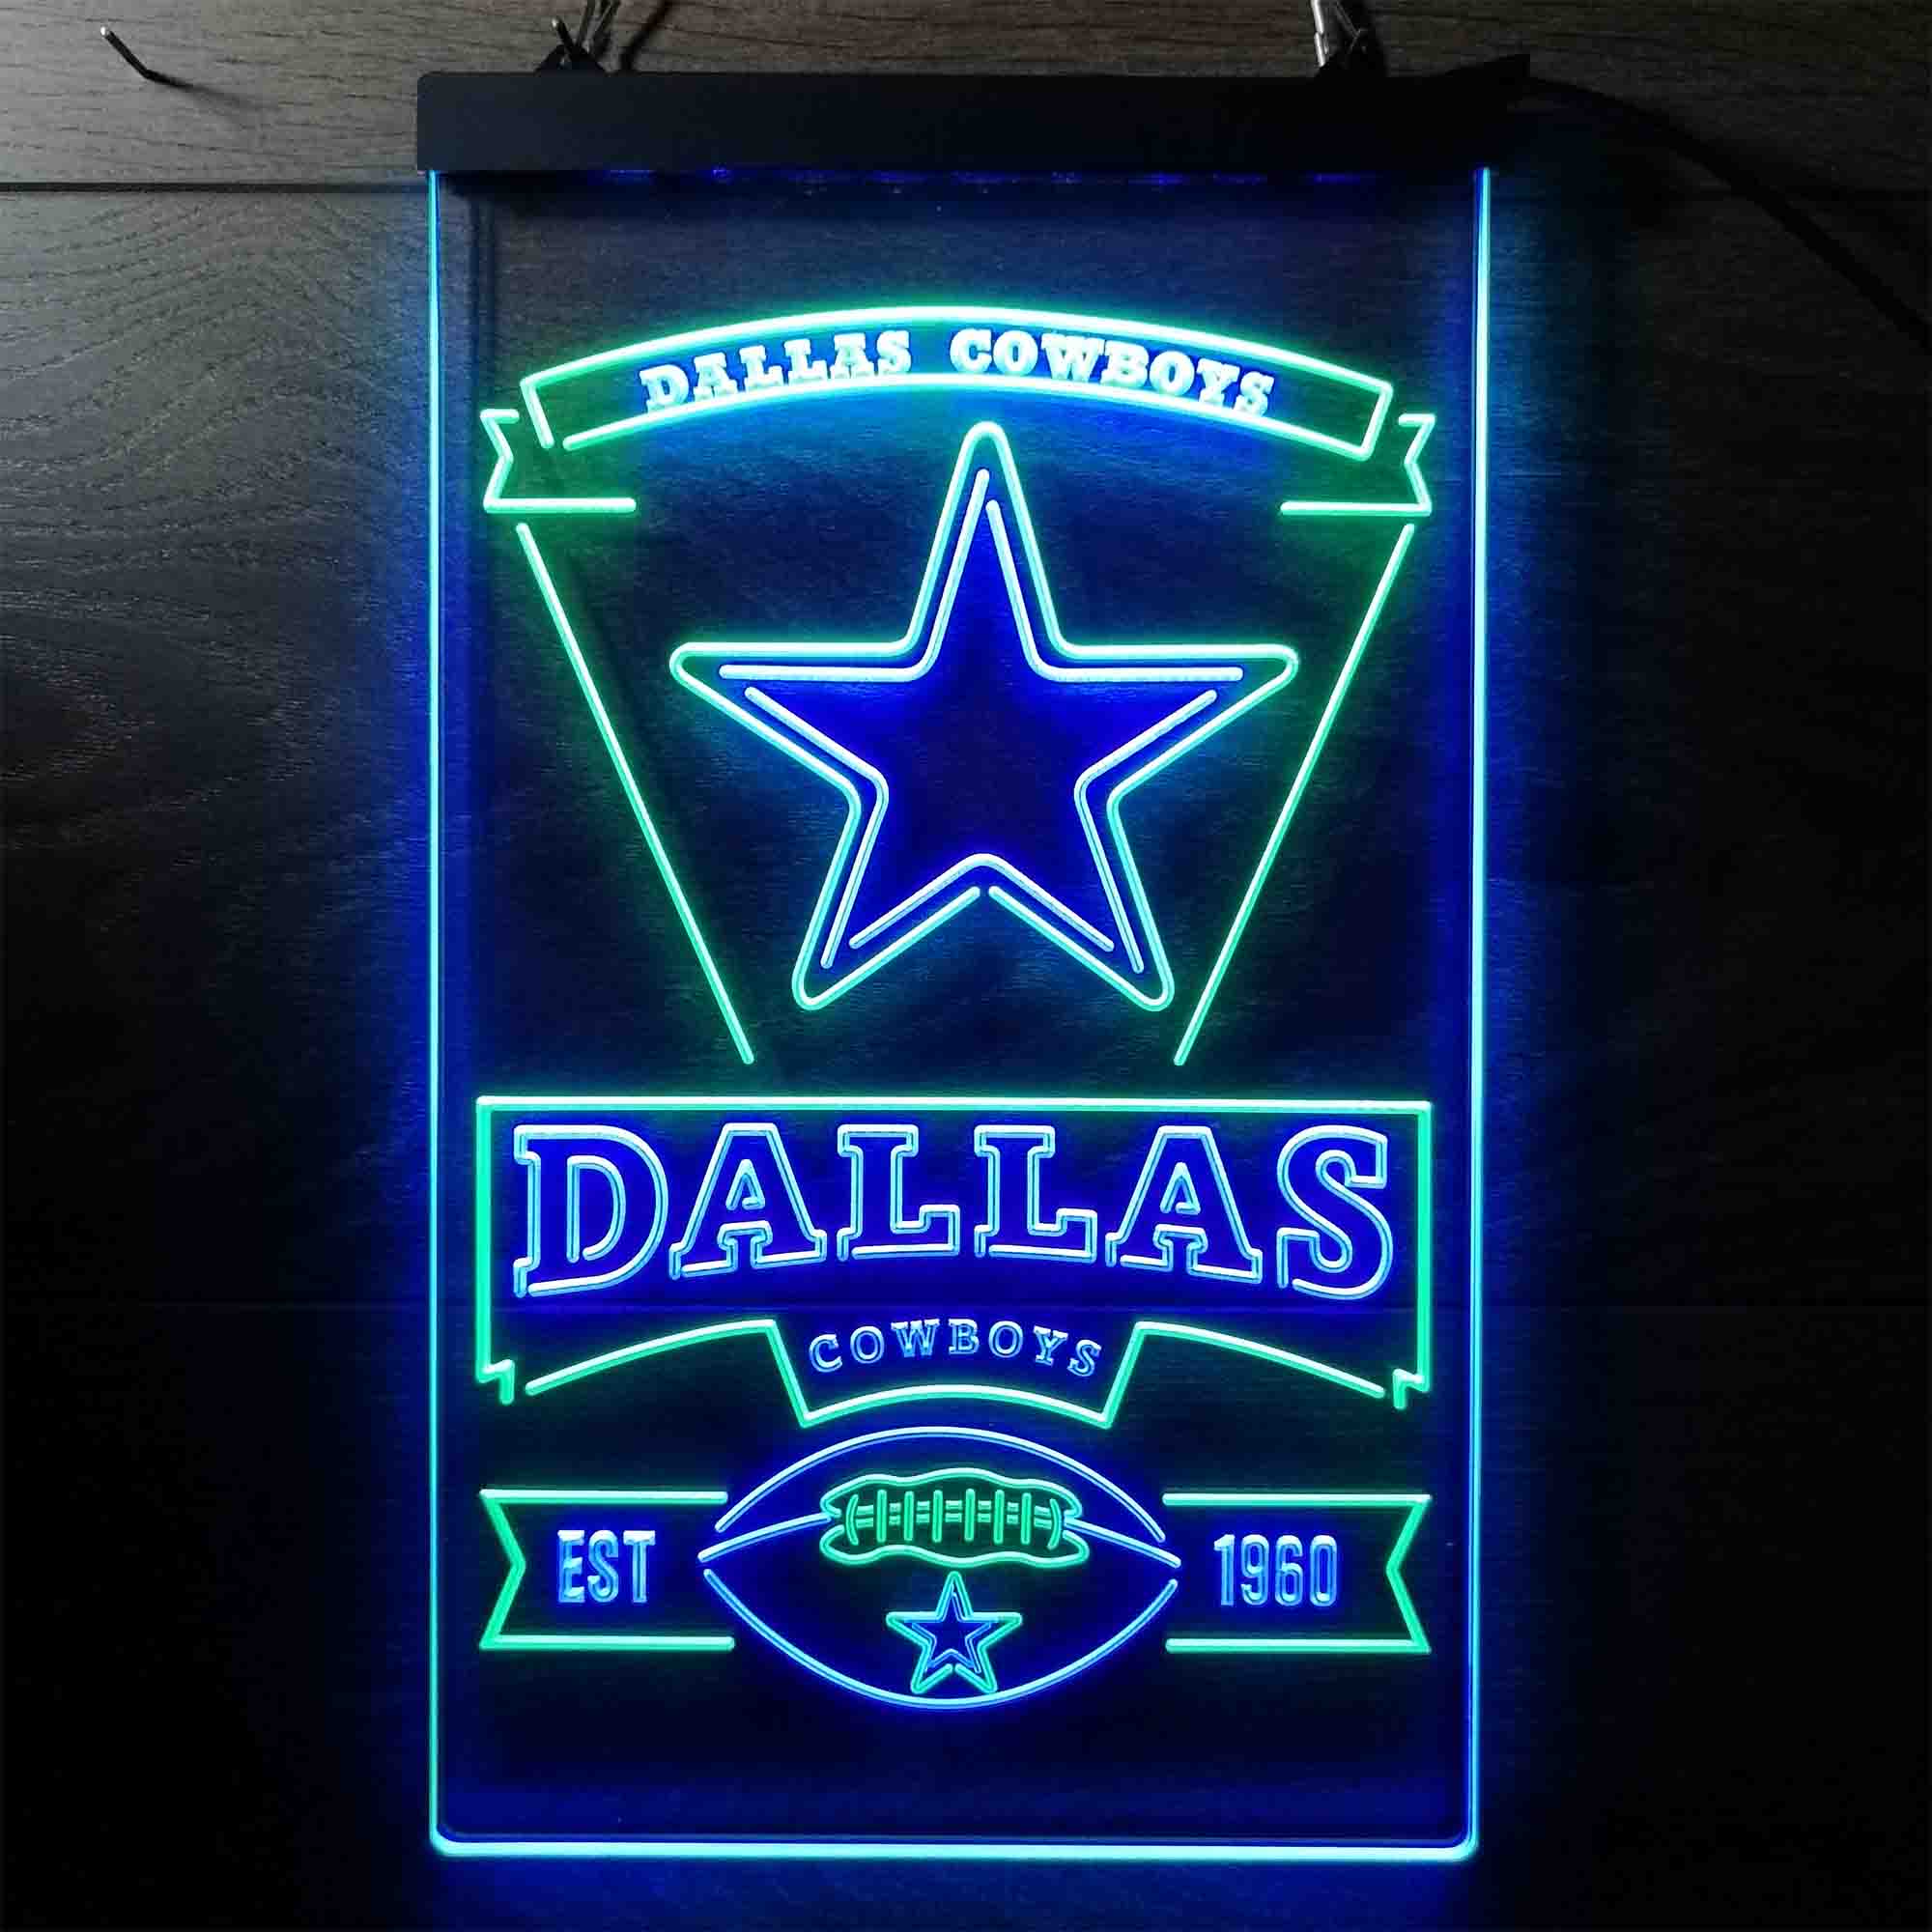 Dallas Cowboys EST 1960 Neon LED Sign